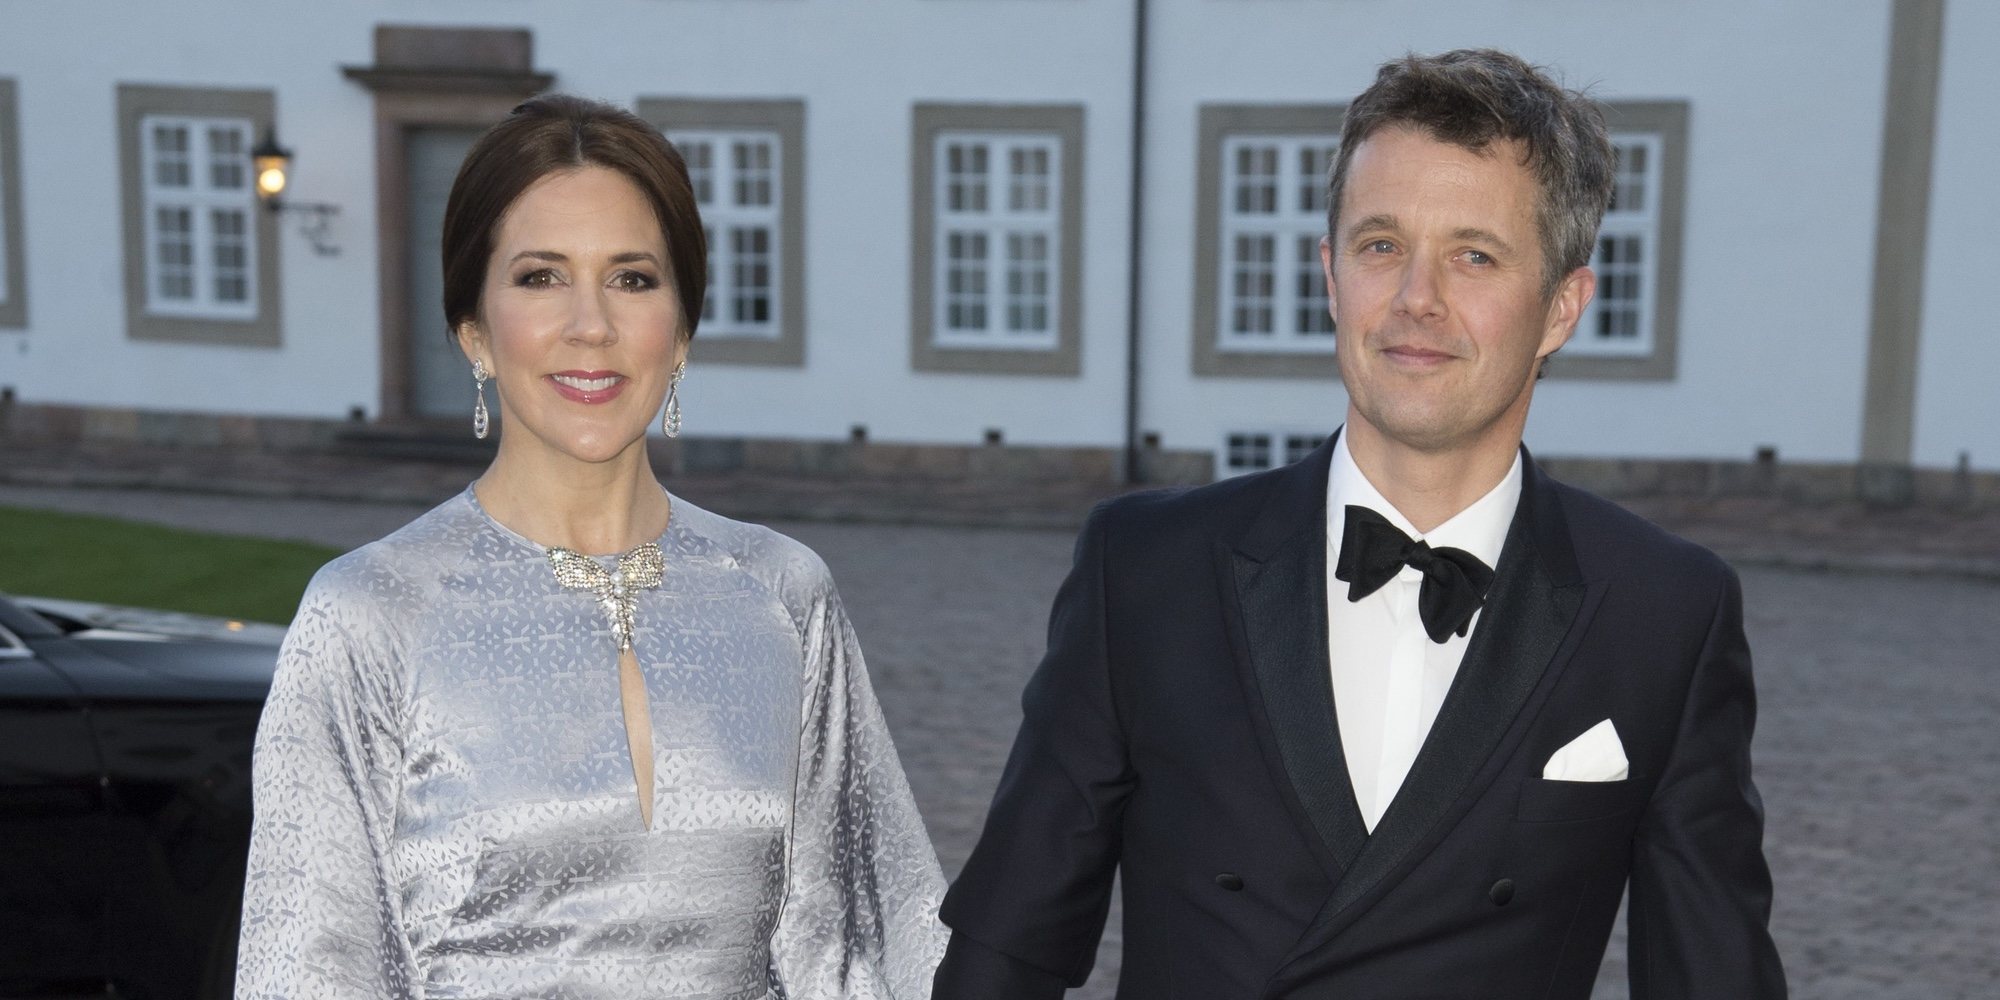 Mary de Dinamarca, sobre la salud del Príncipe Federico: "Él es muy consciente de las circunstancias"